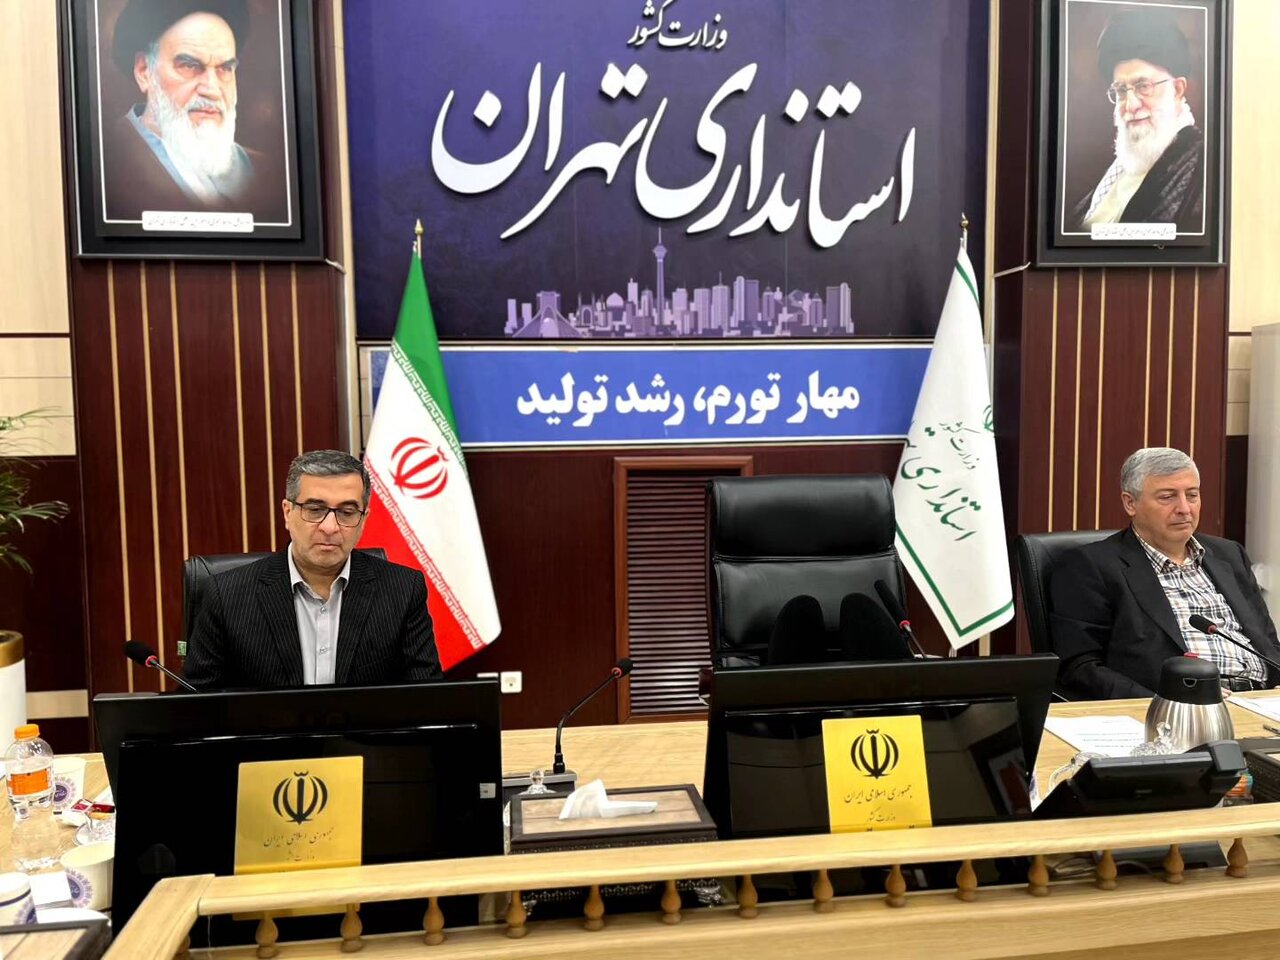 بازگشت ۴۵۴ میلیارد اعتبار دستگاه های اجرایی استان تهران به خزانه